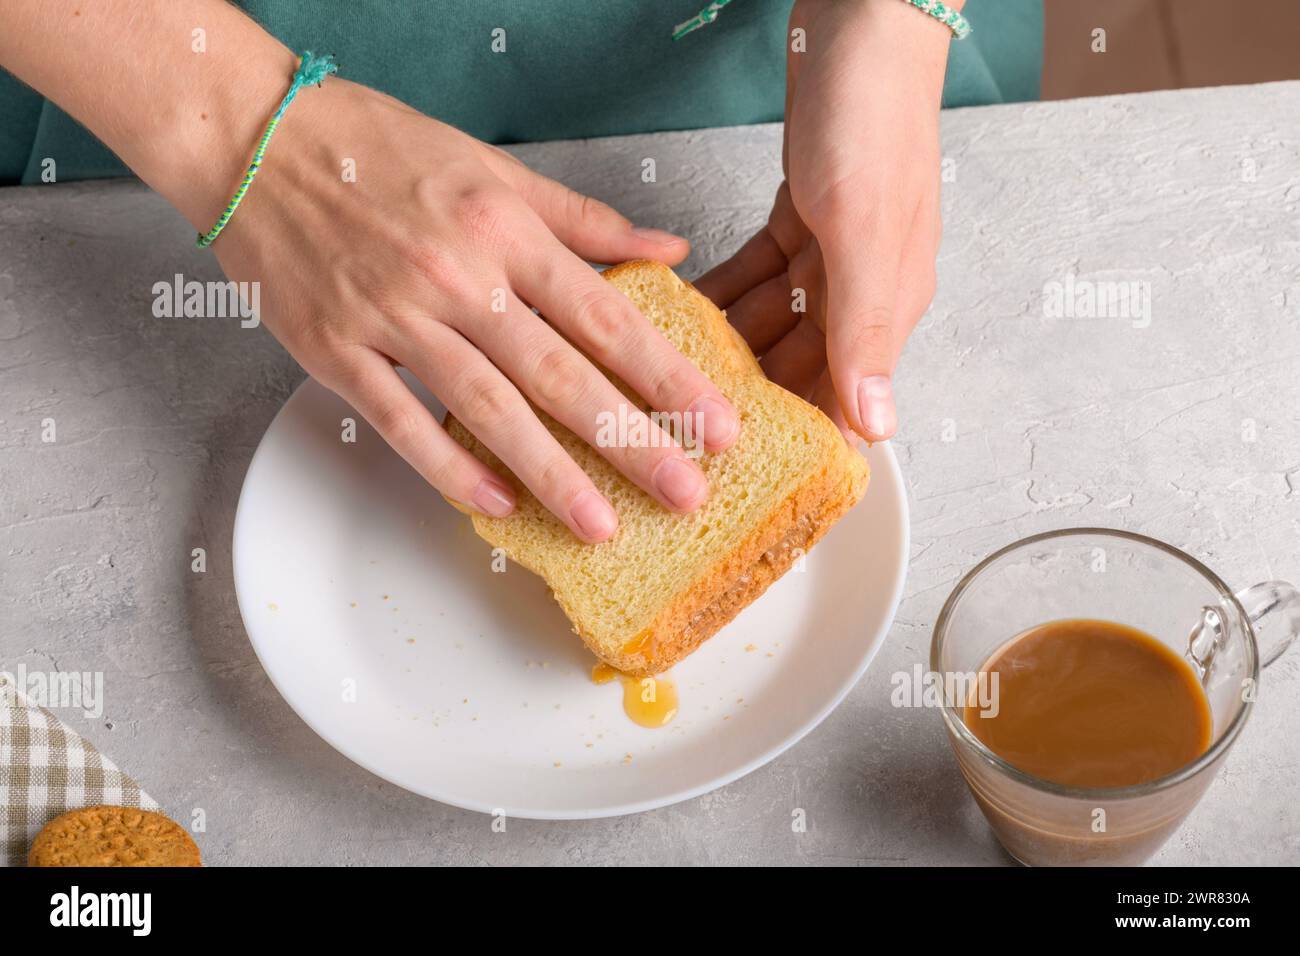 Mains féminines faisant un sandwich avec du miel et du beurre d'arachide étalant sur un morceau de pain de blé, pour prendre un petit déjeuner. Snack typique, style de vie alimentaire Banque D'Images